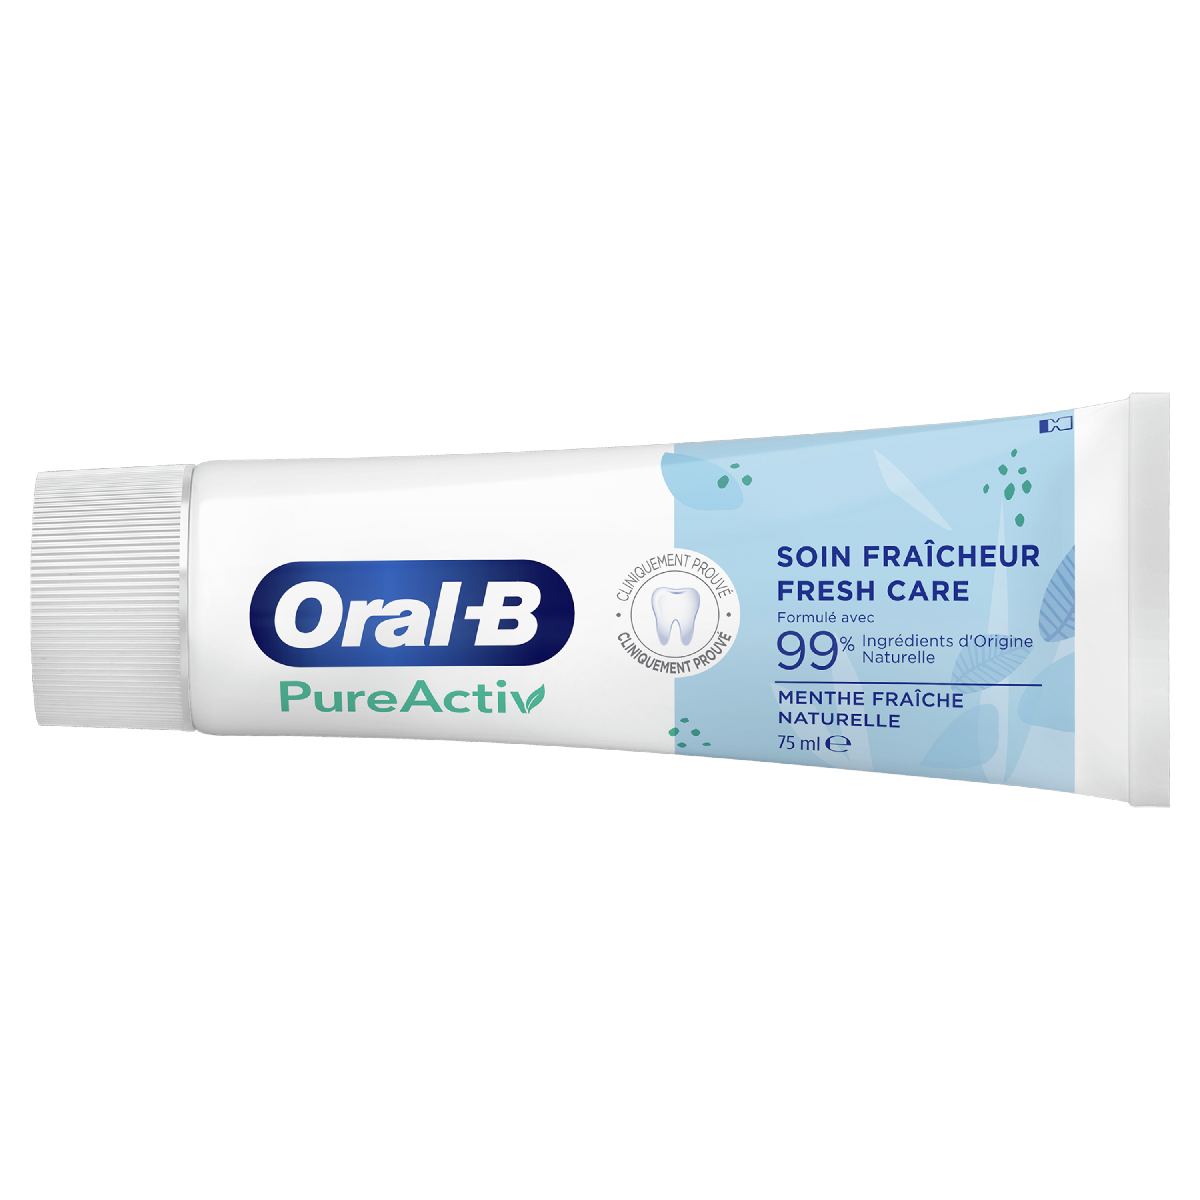 Oral-B PureActiv Soin Fraîcheur Dentifrice 75ml undefined